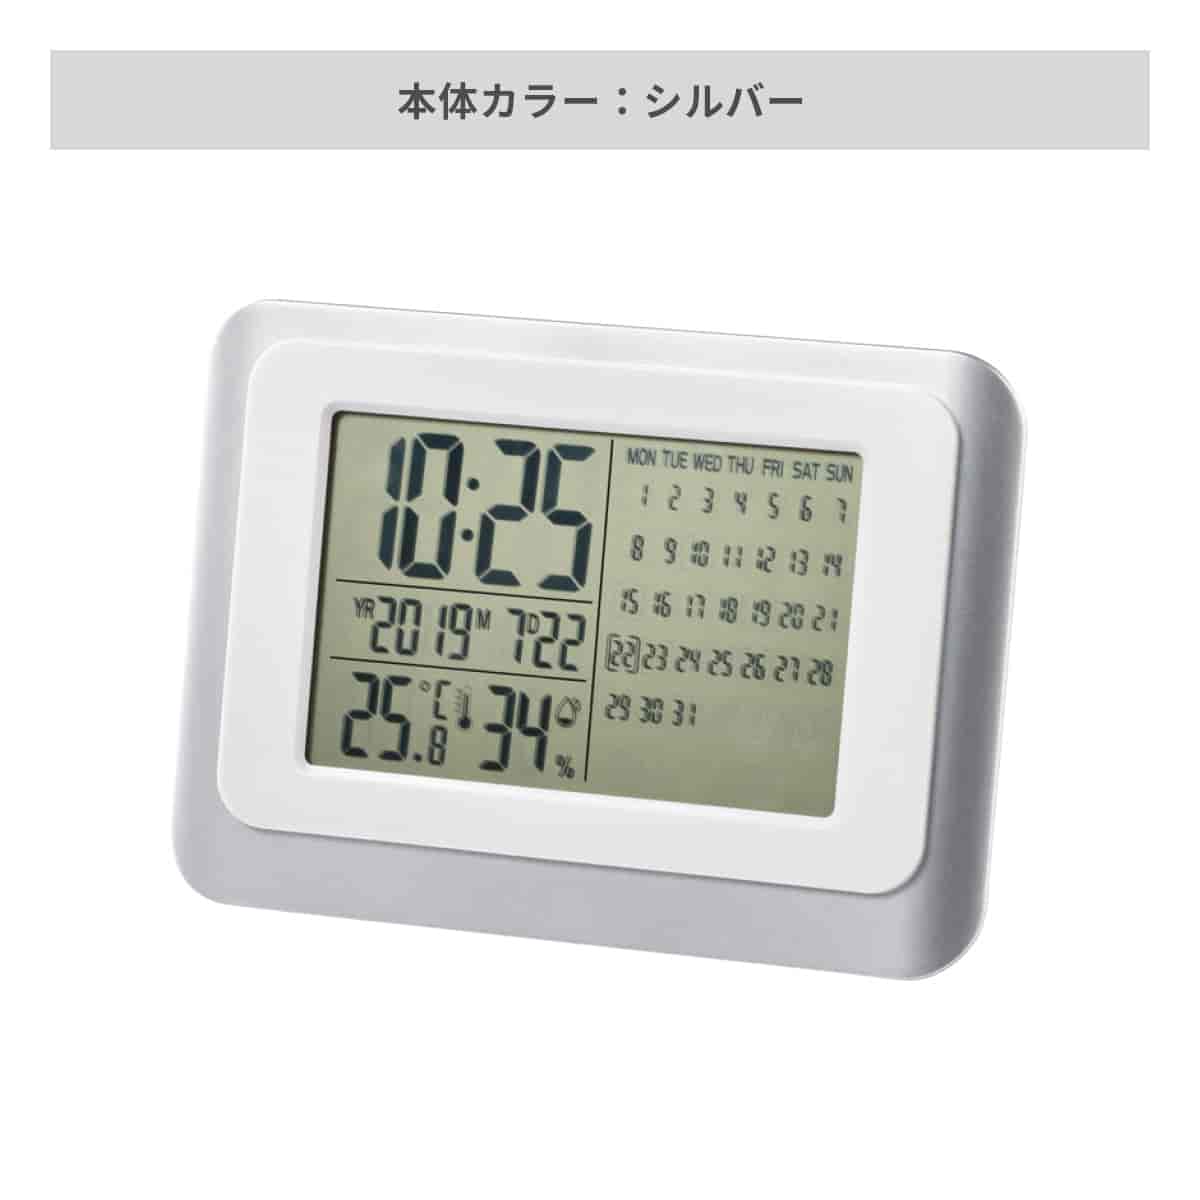 デジタルカレンダークロック【オリジナル時計 / パッド印刷】 画像4